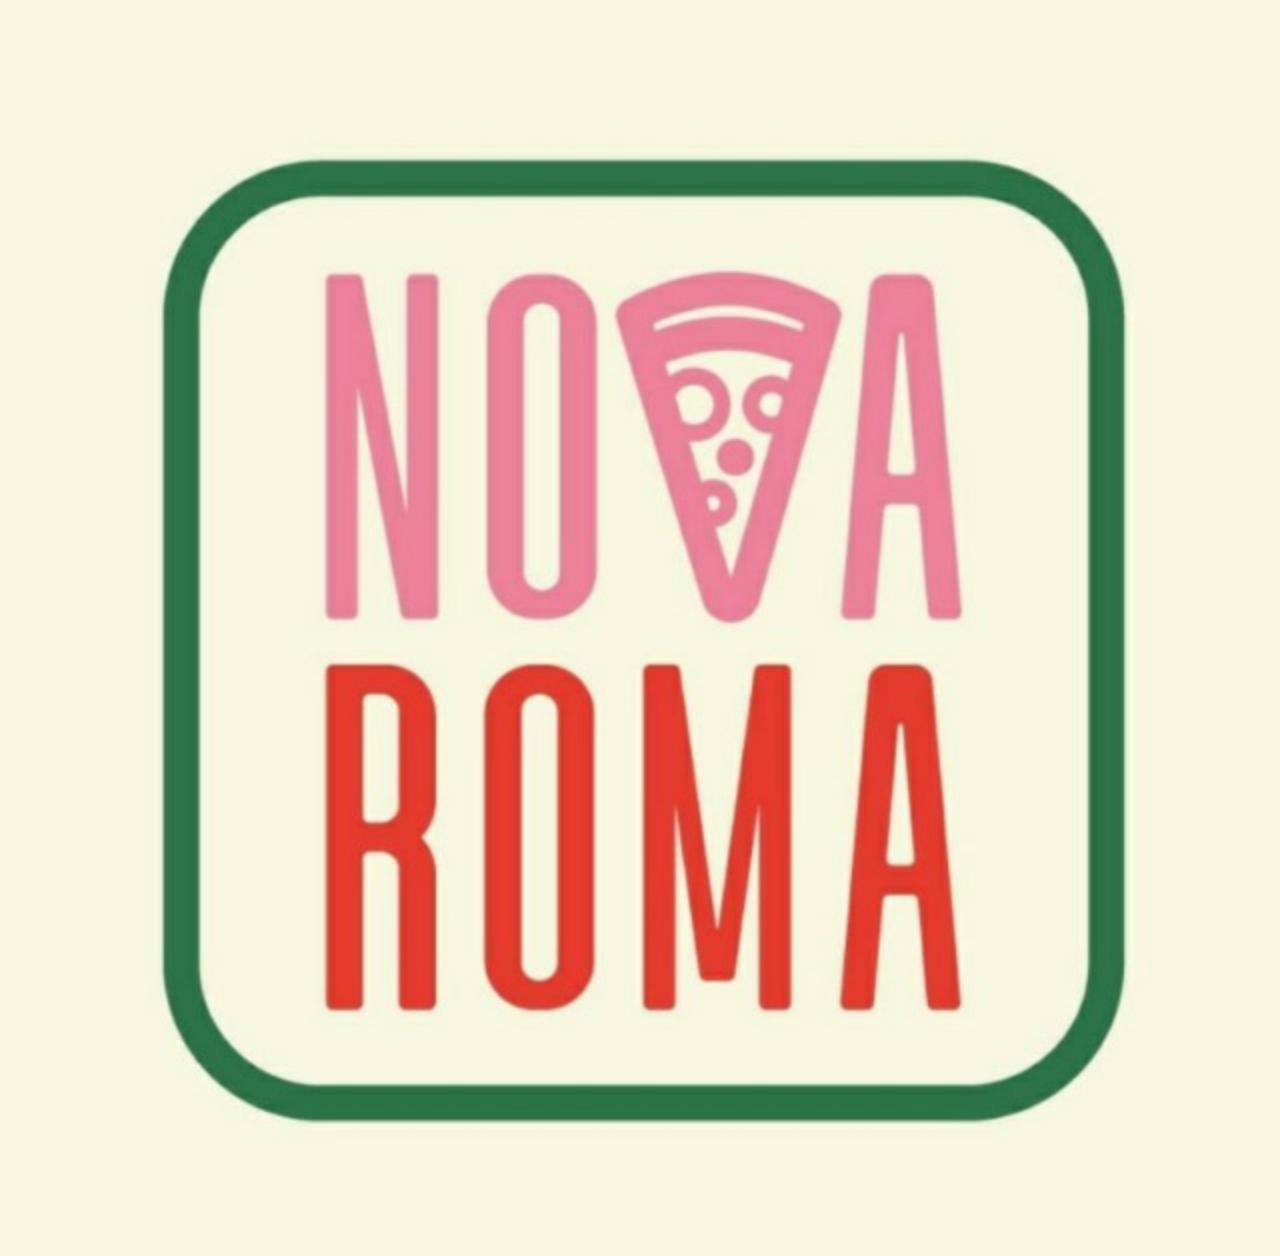 Nova Roma Pizzaria